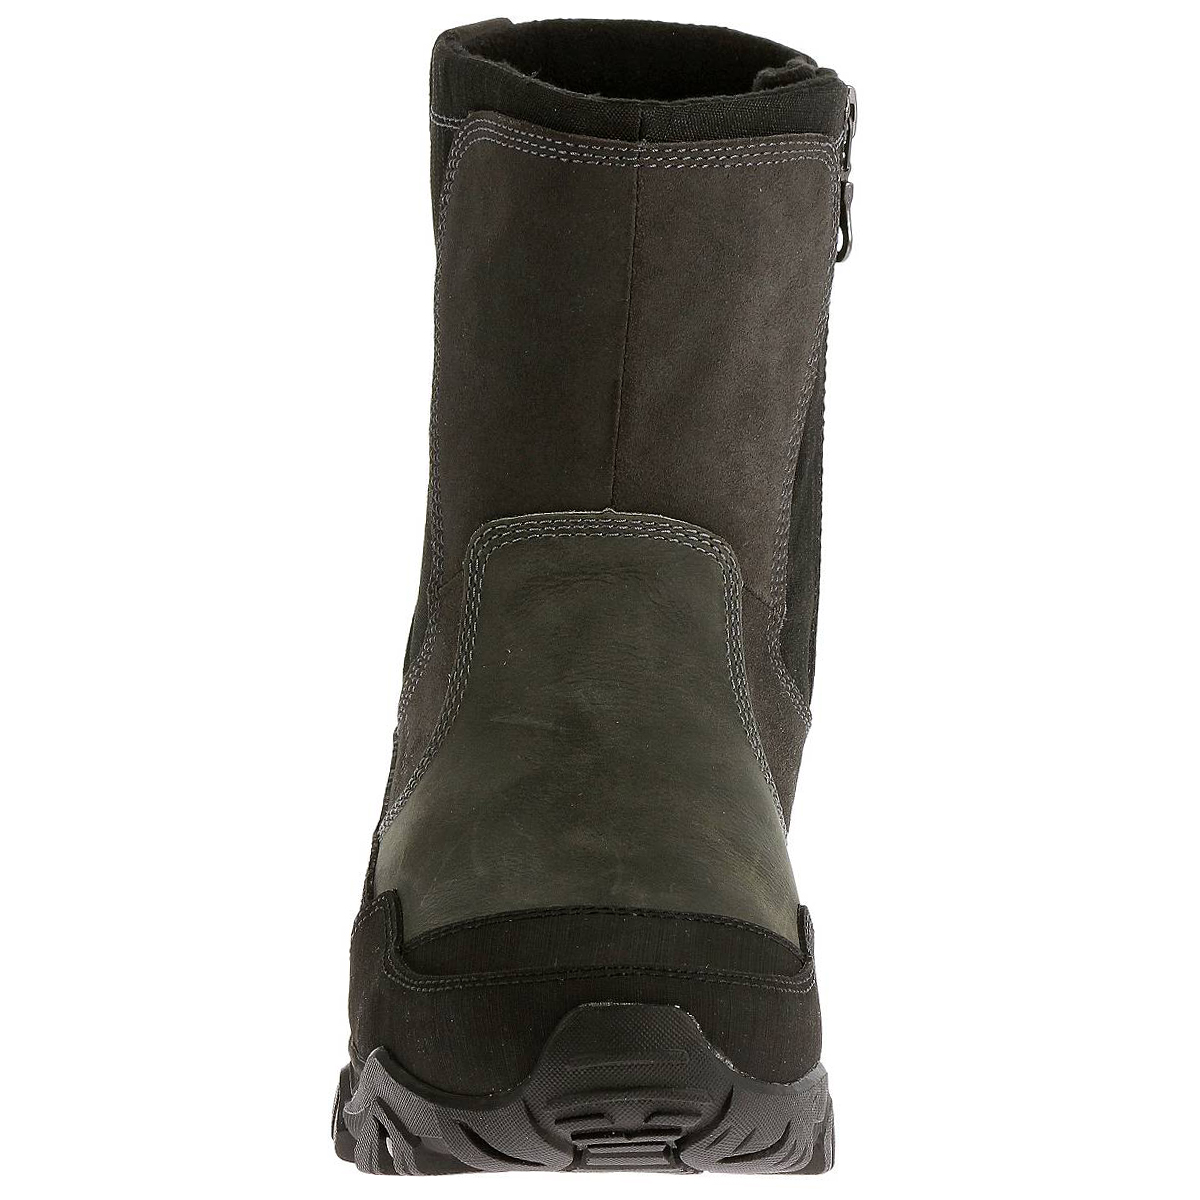 merrell men's polarand rove zip waterproof winter boot